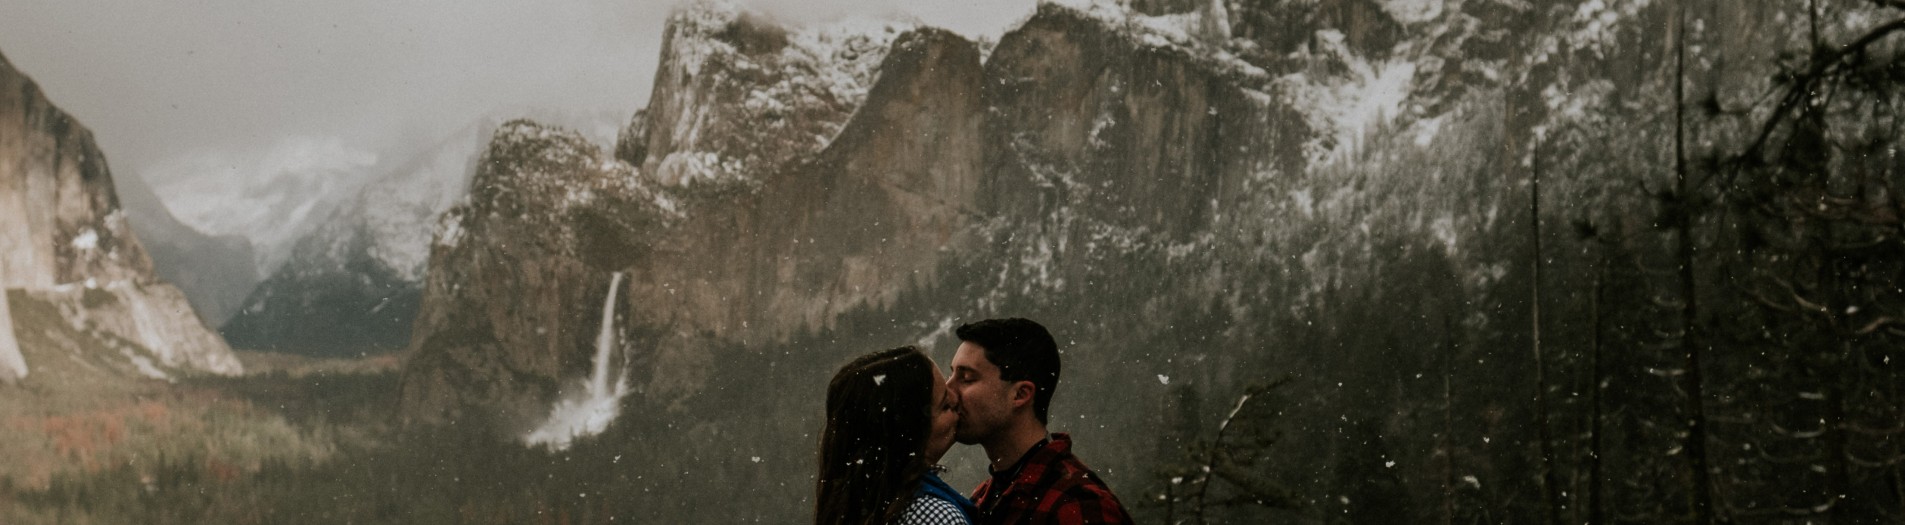 Kim + Matt | Scenic Yosemite Adventure in the Falling Snow